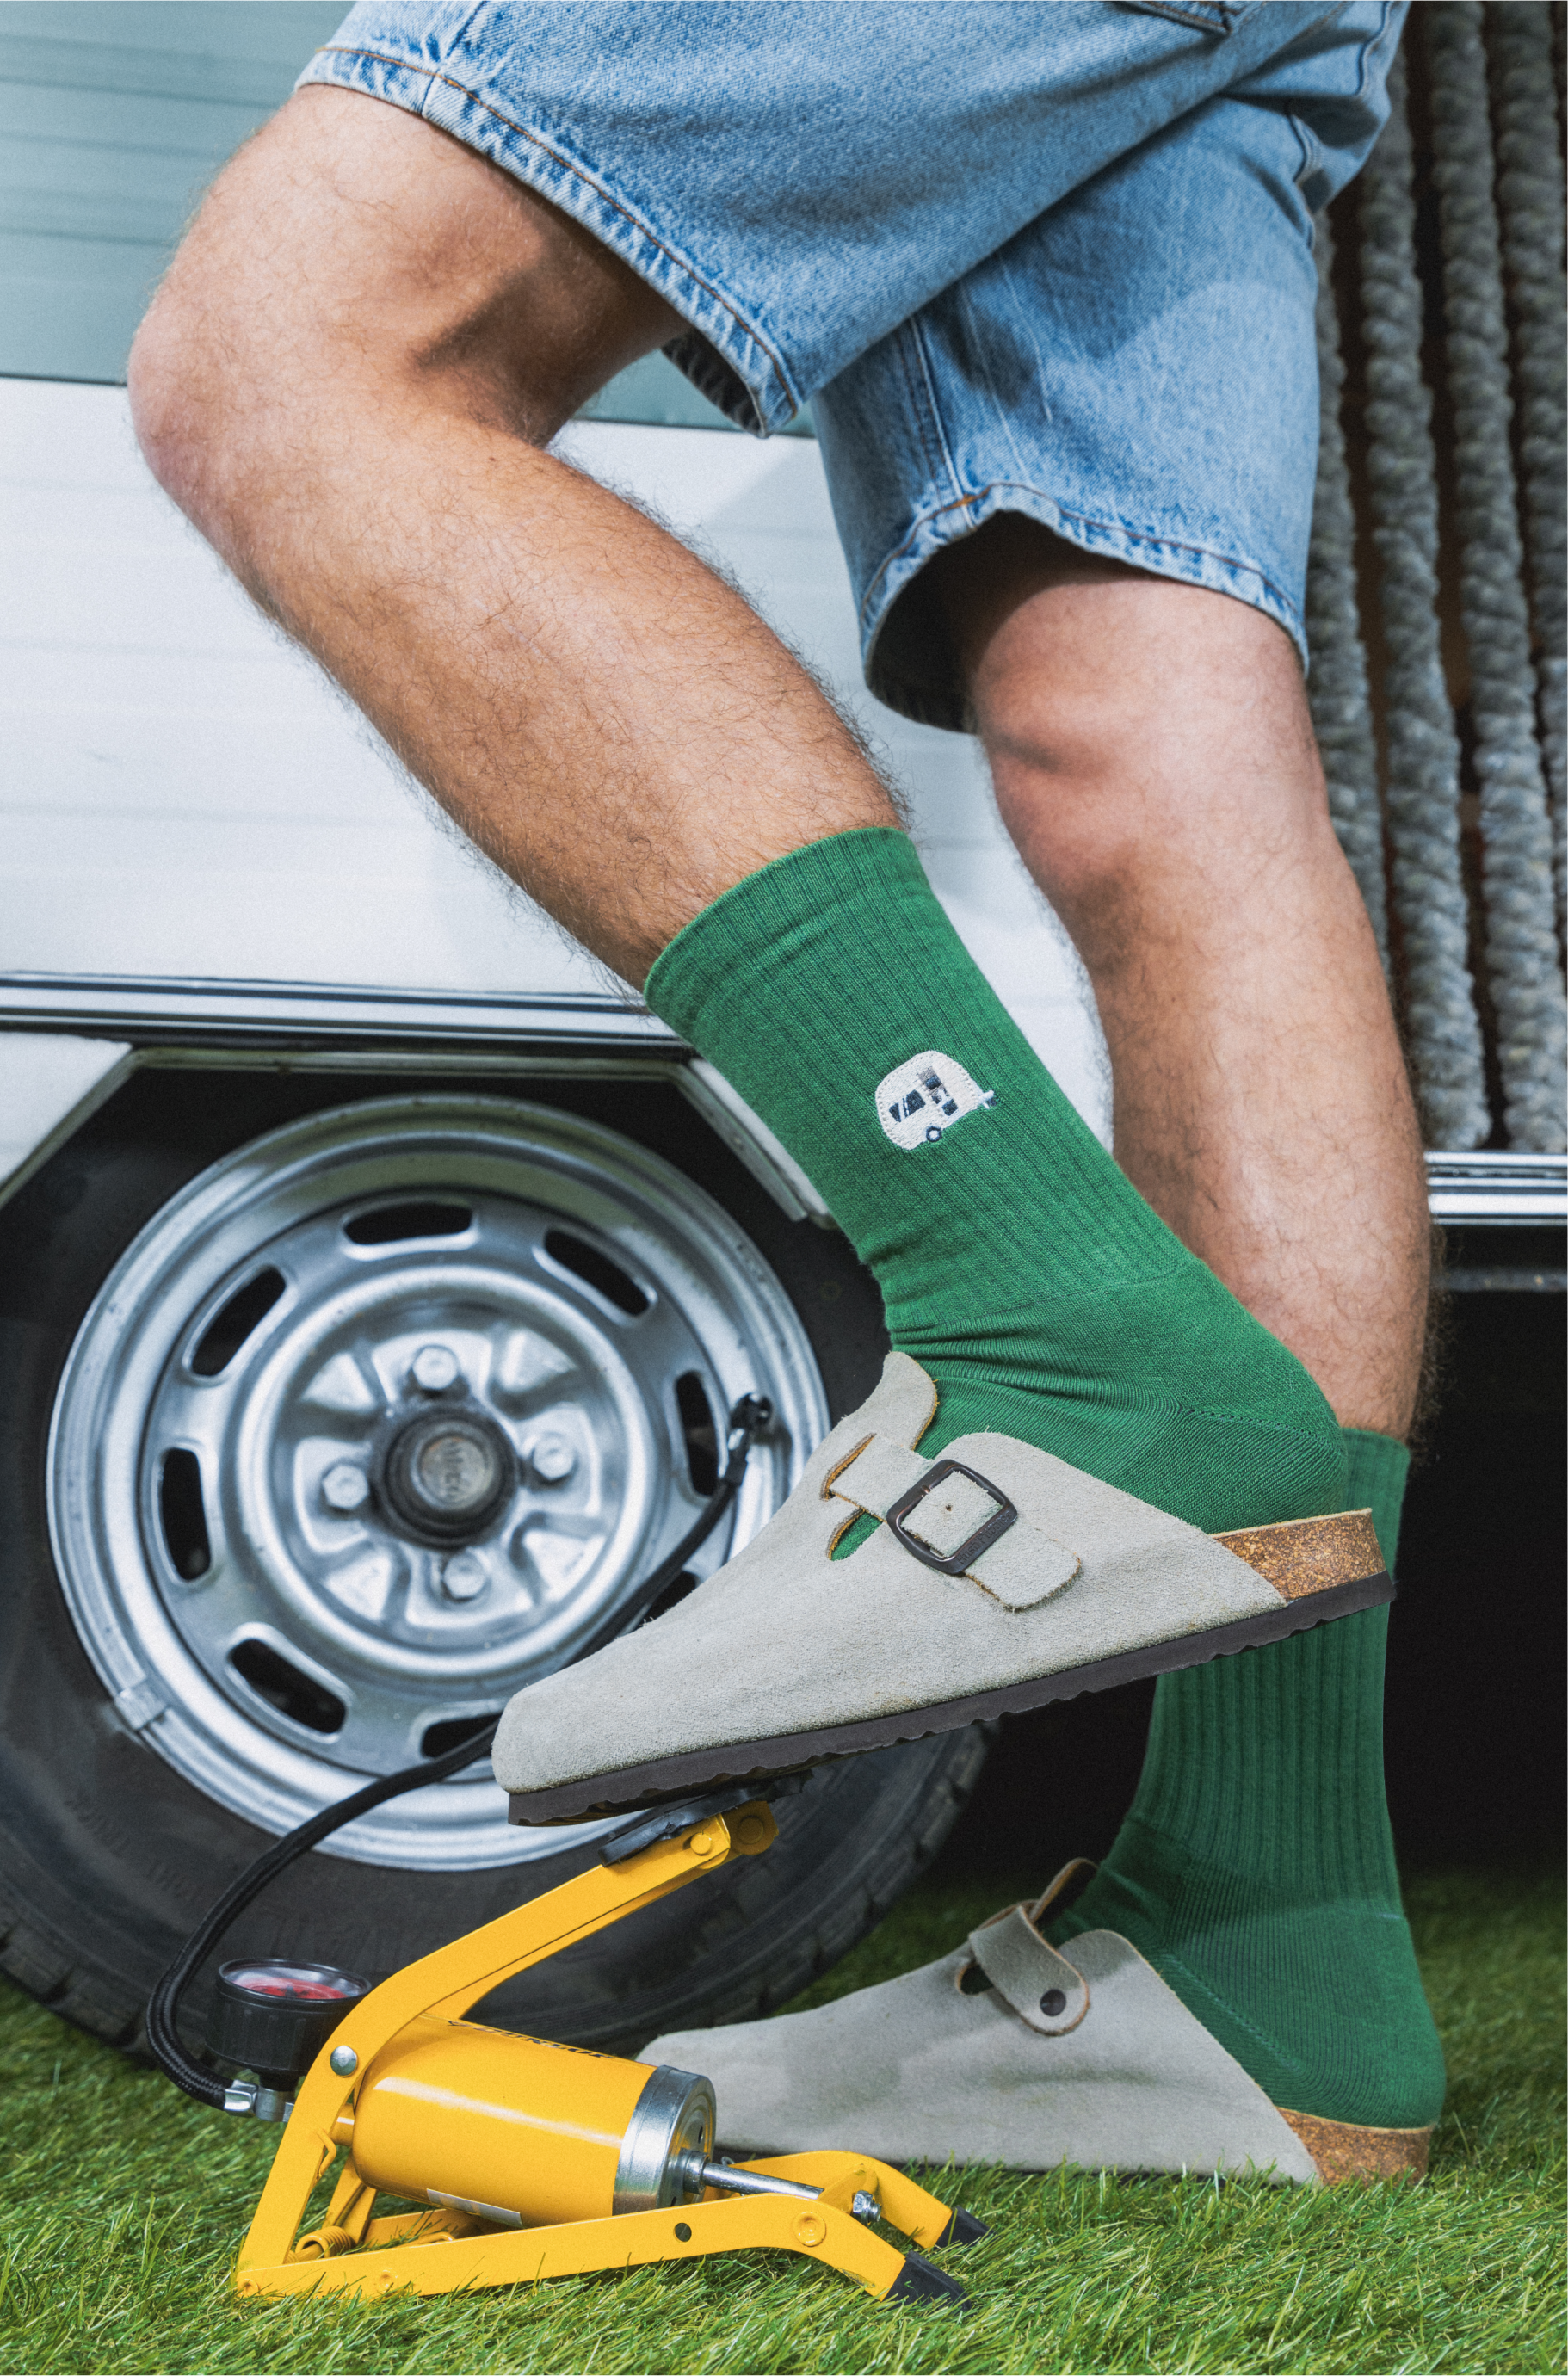 Grüne Sport-Socken Green Caravan unisex